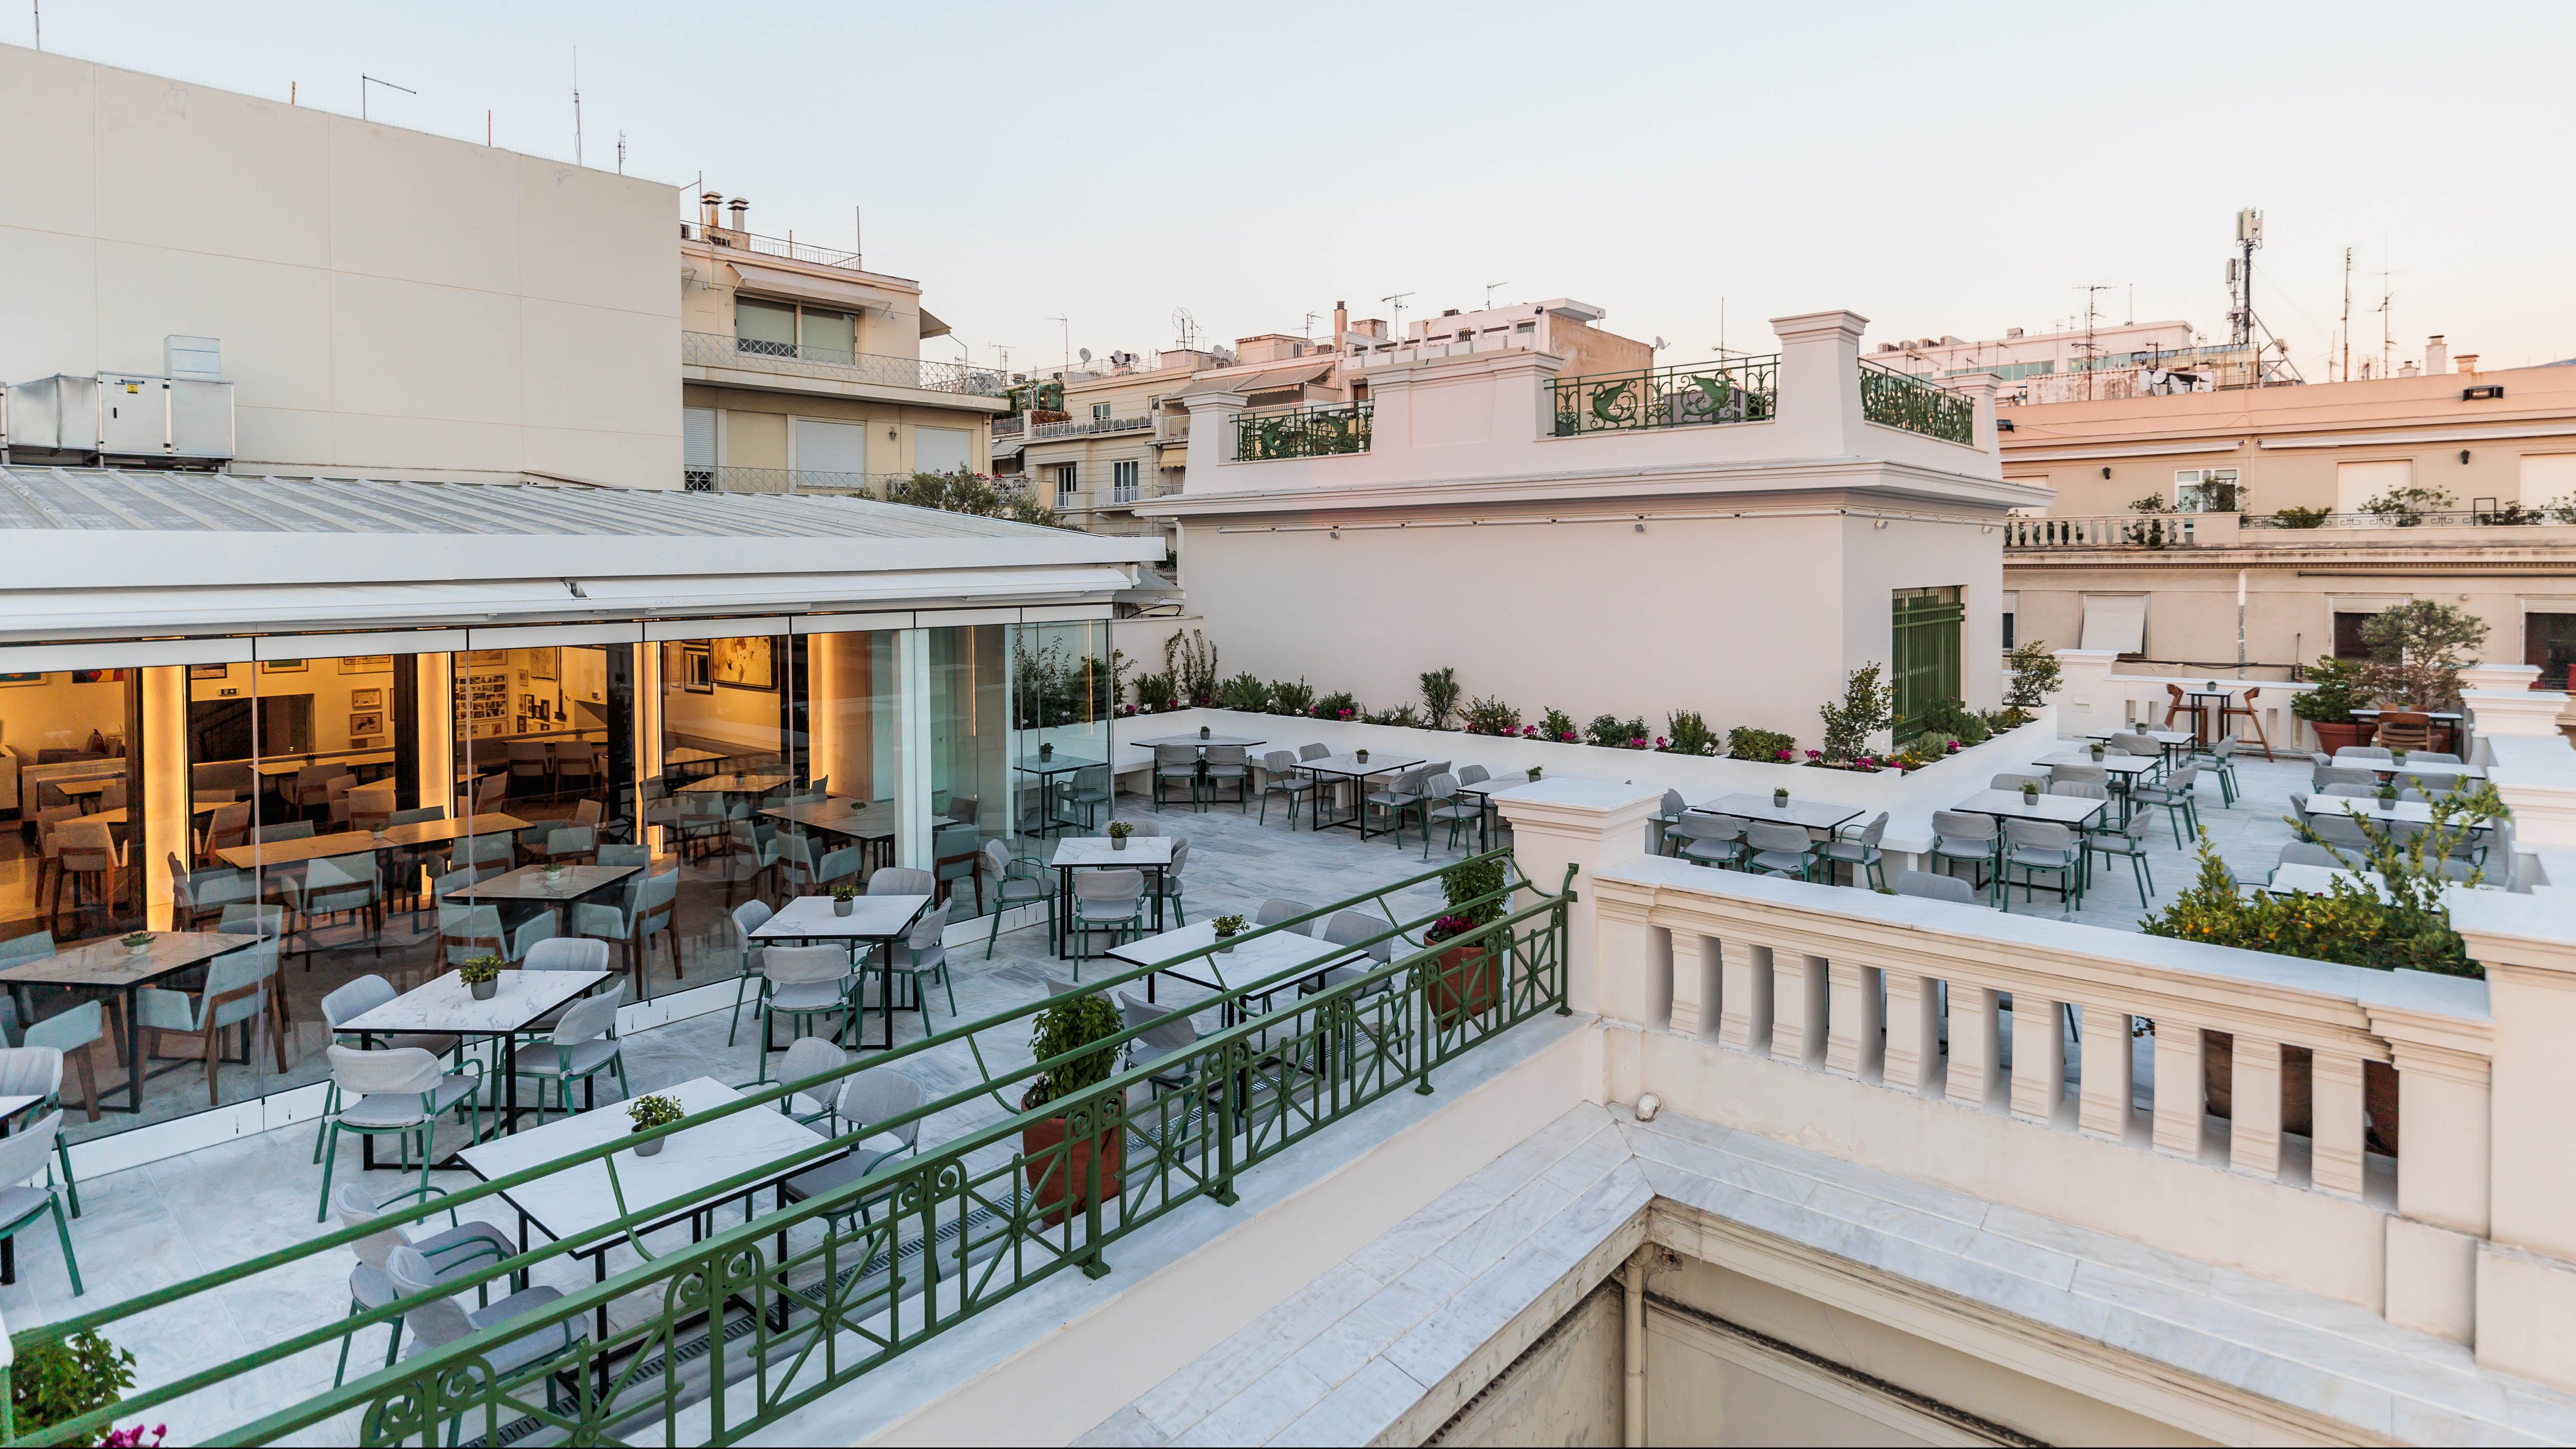 Υπέροχο Roof Garden στην καρδιά της Αθήνας: Εστιατόριο Μουσείο Μπενάκη Ελληνικού Πολιτισμού